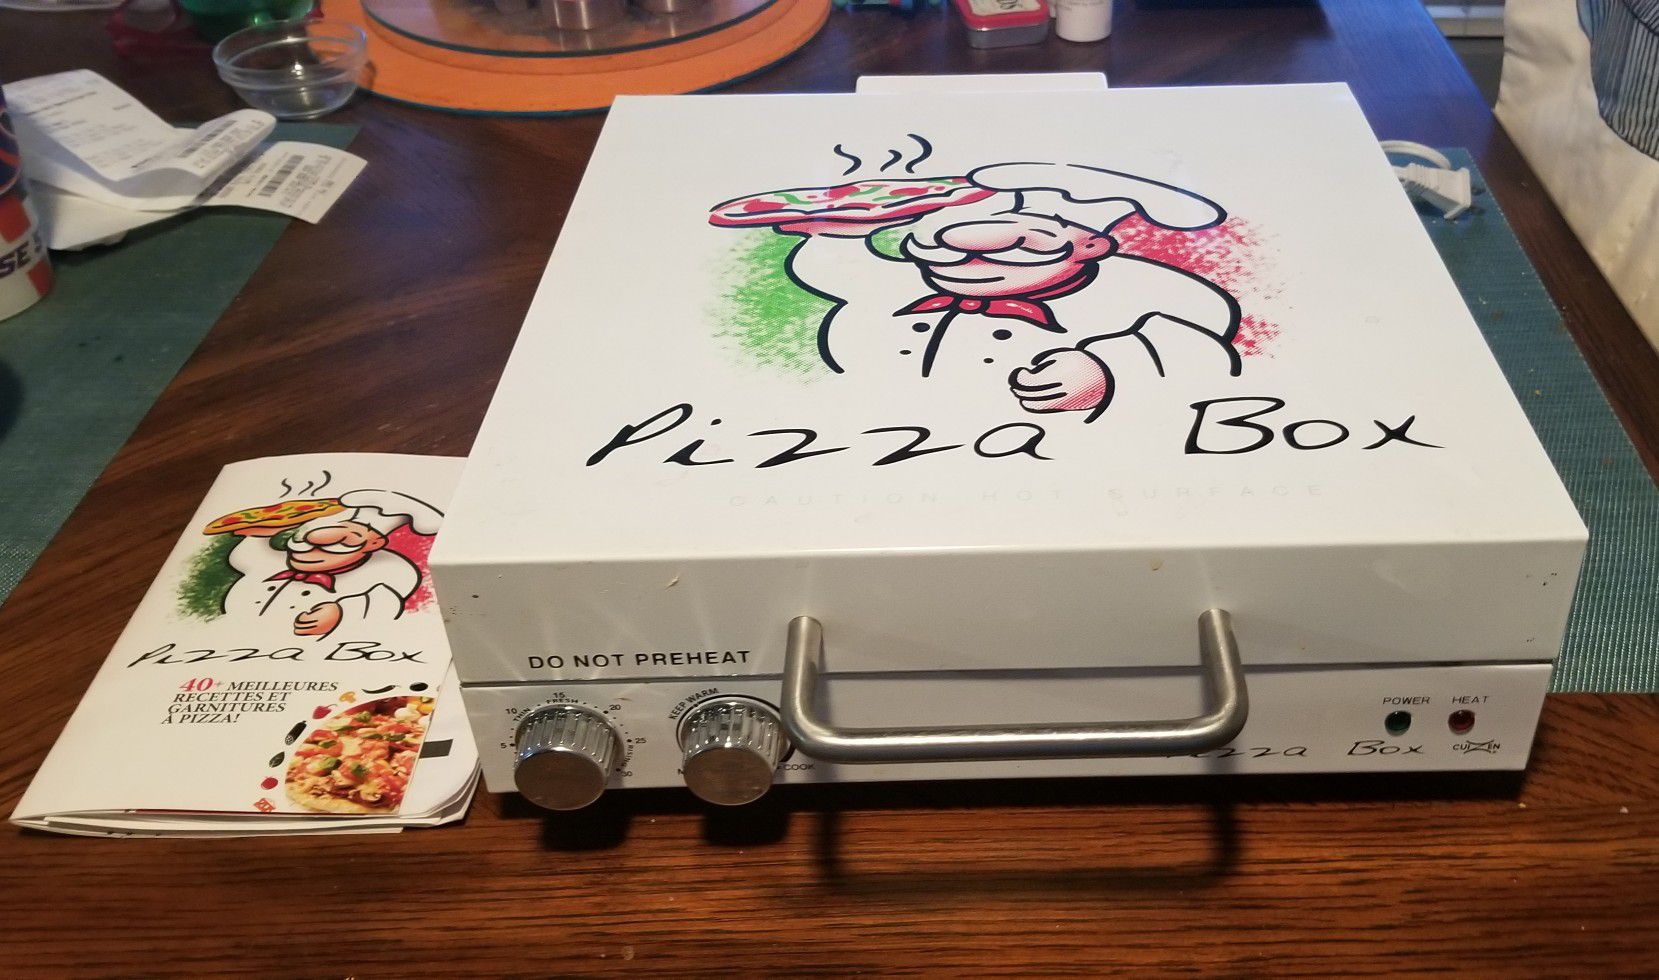 "PIZZA BOX" PIZZA MAKER